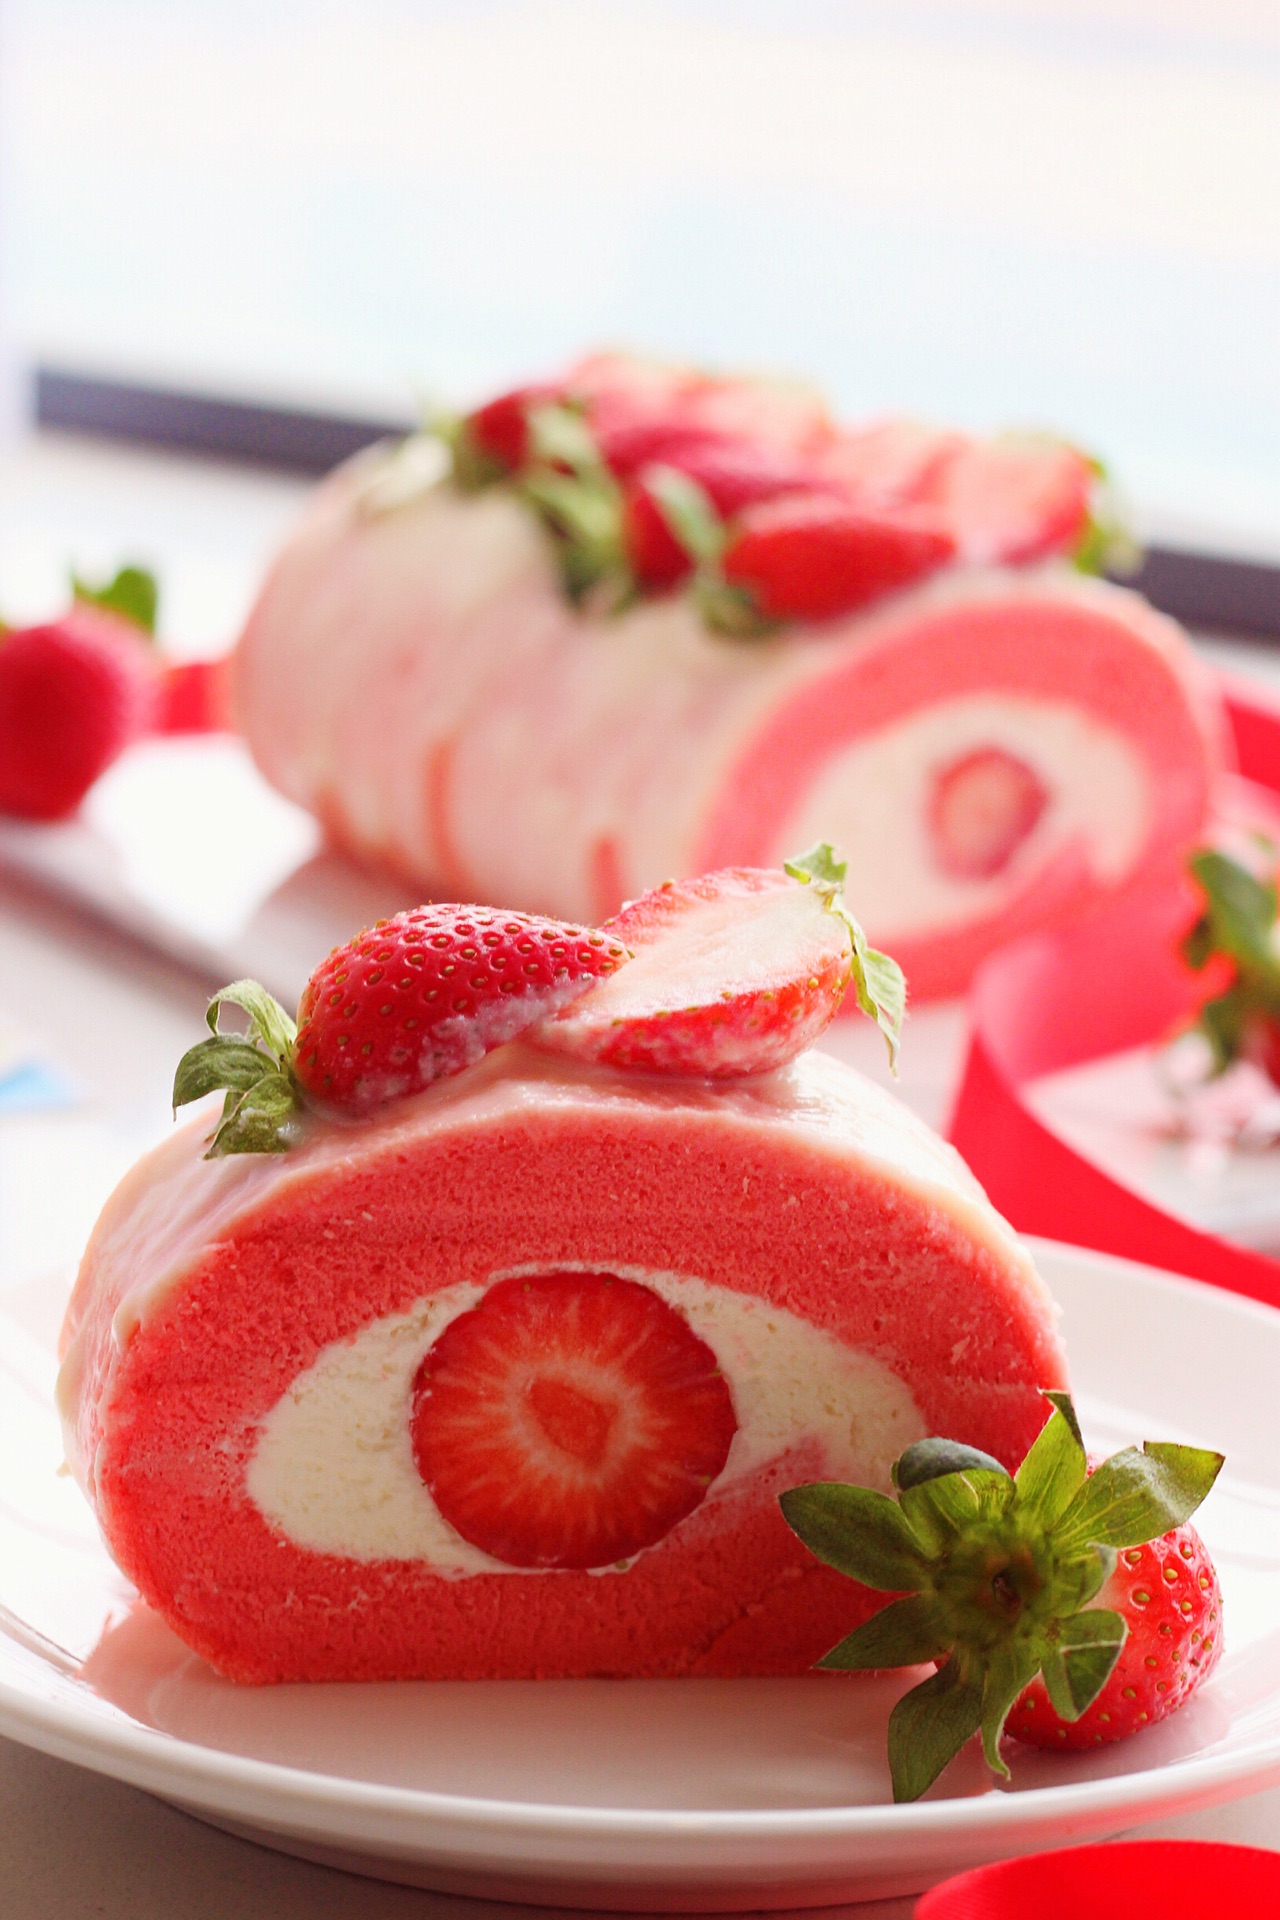 草莓生日蛋糕的做法_【图解】草莓生日蛋糕怎么做如何做好吃_草莓生日蛋糕家常做法大全_木香香_豆果美食